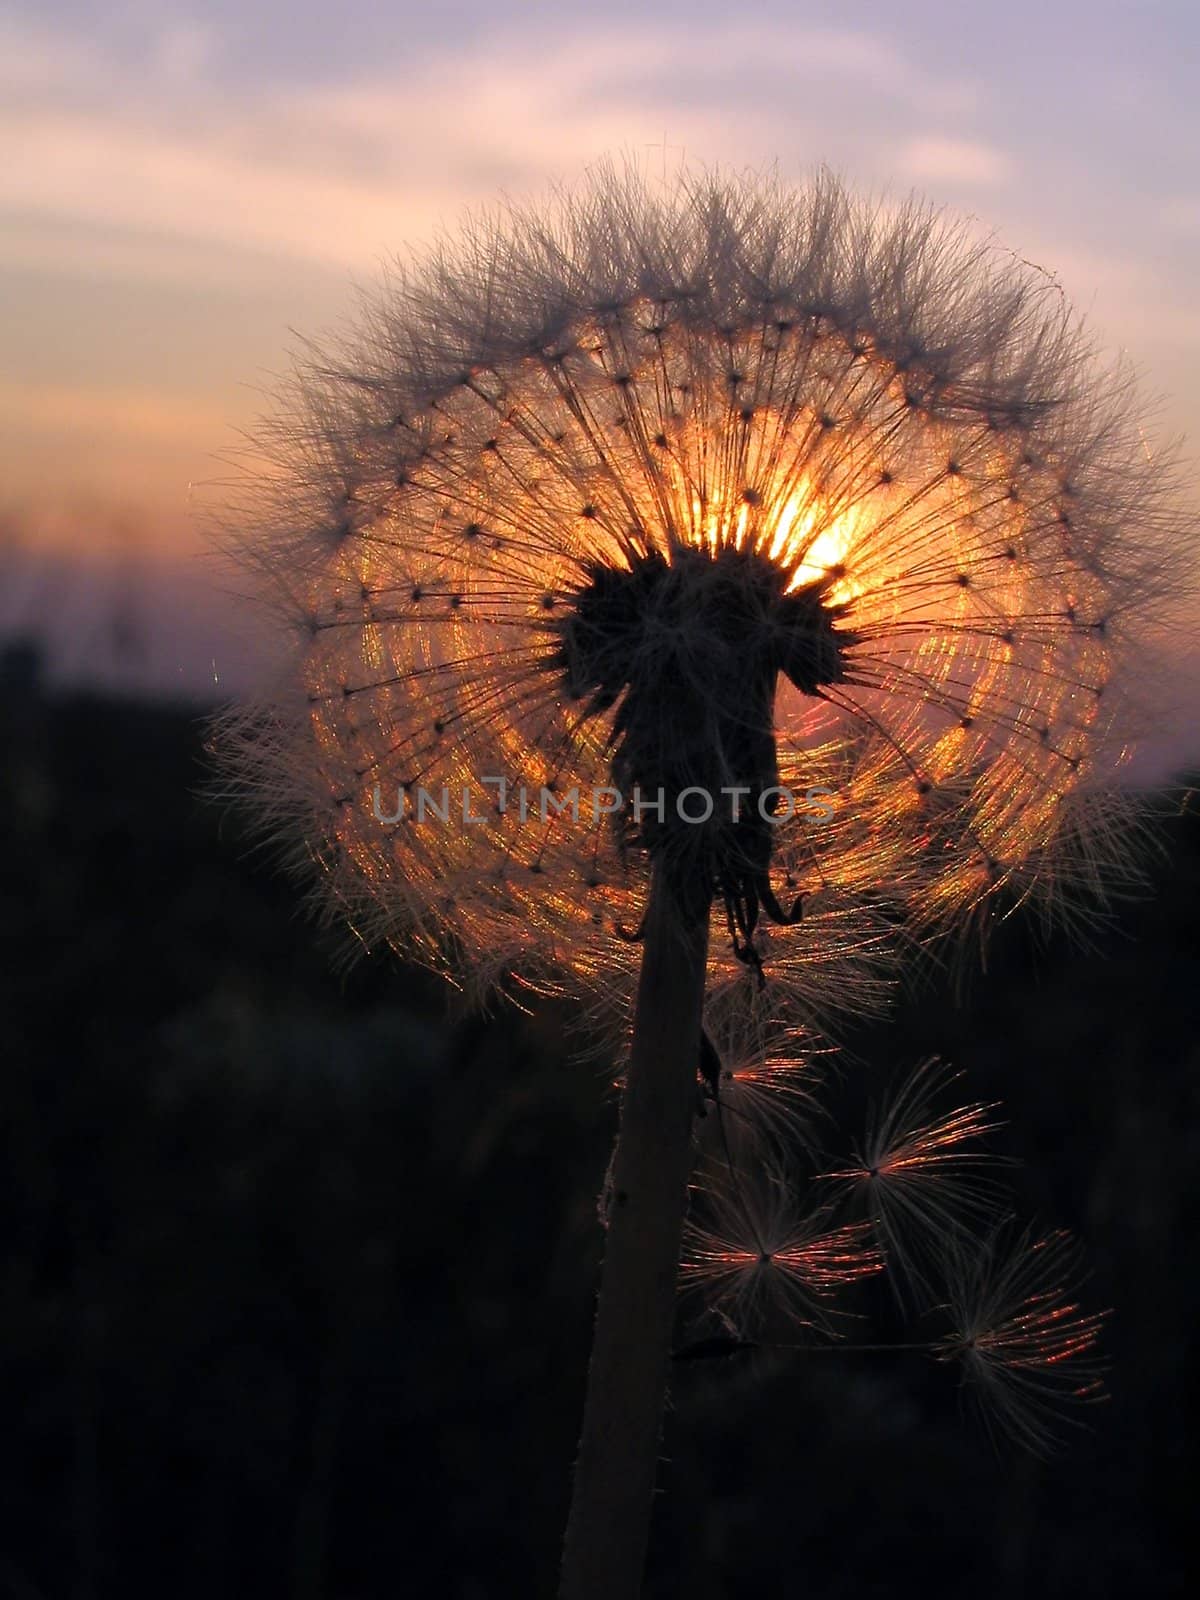 Dandelion on sundown sun